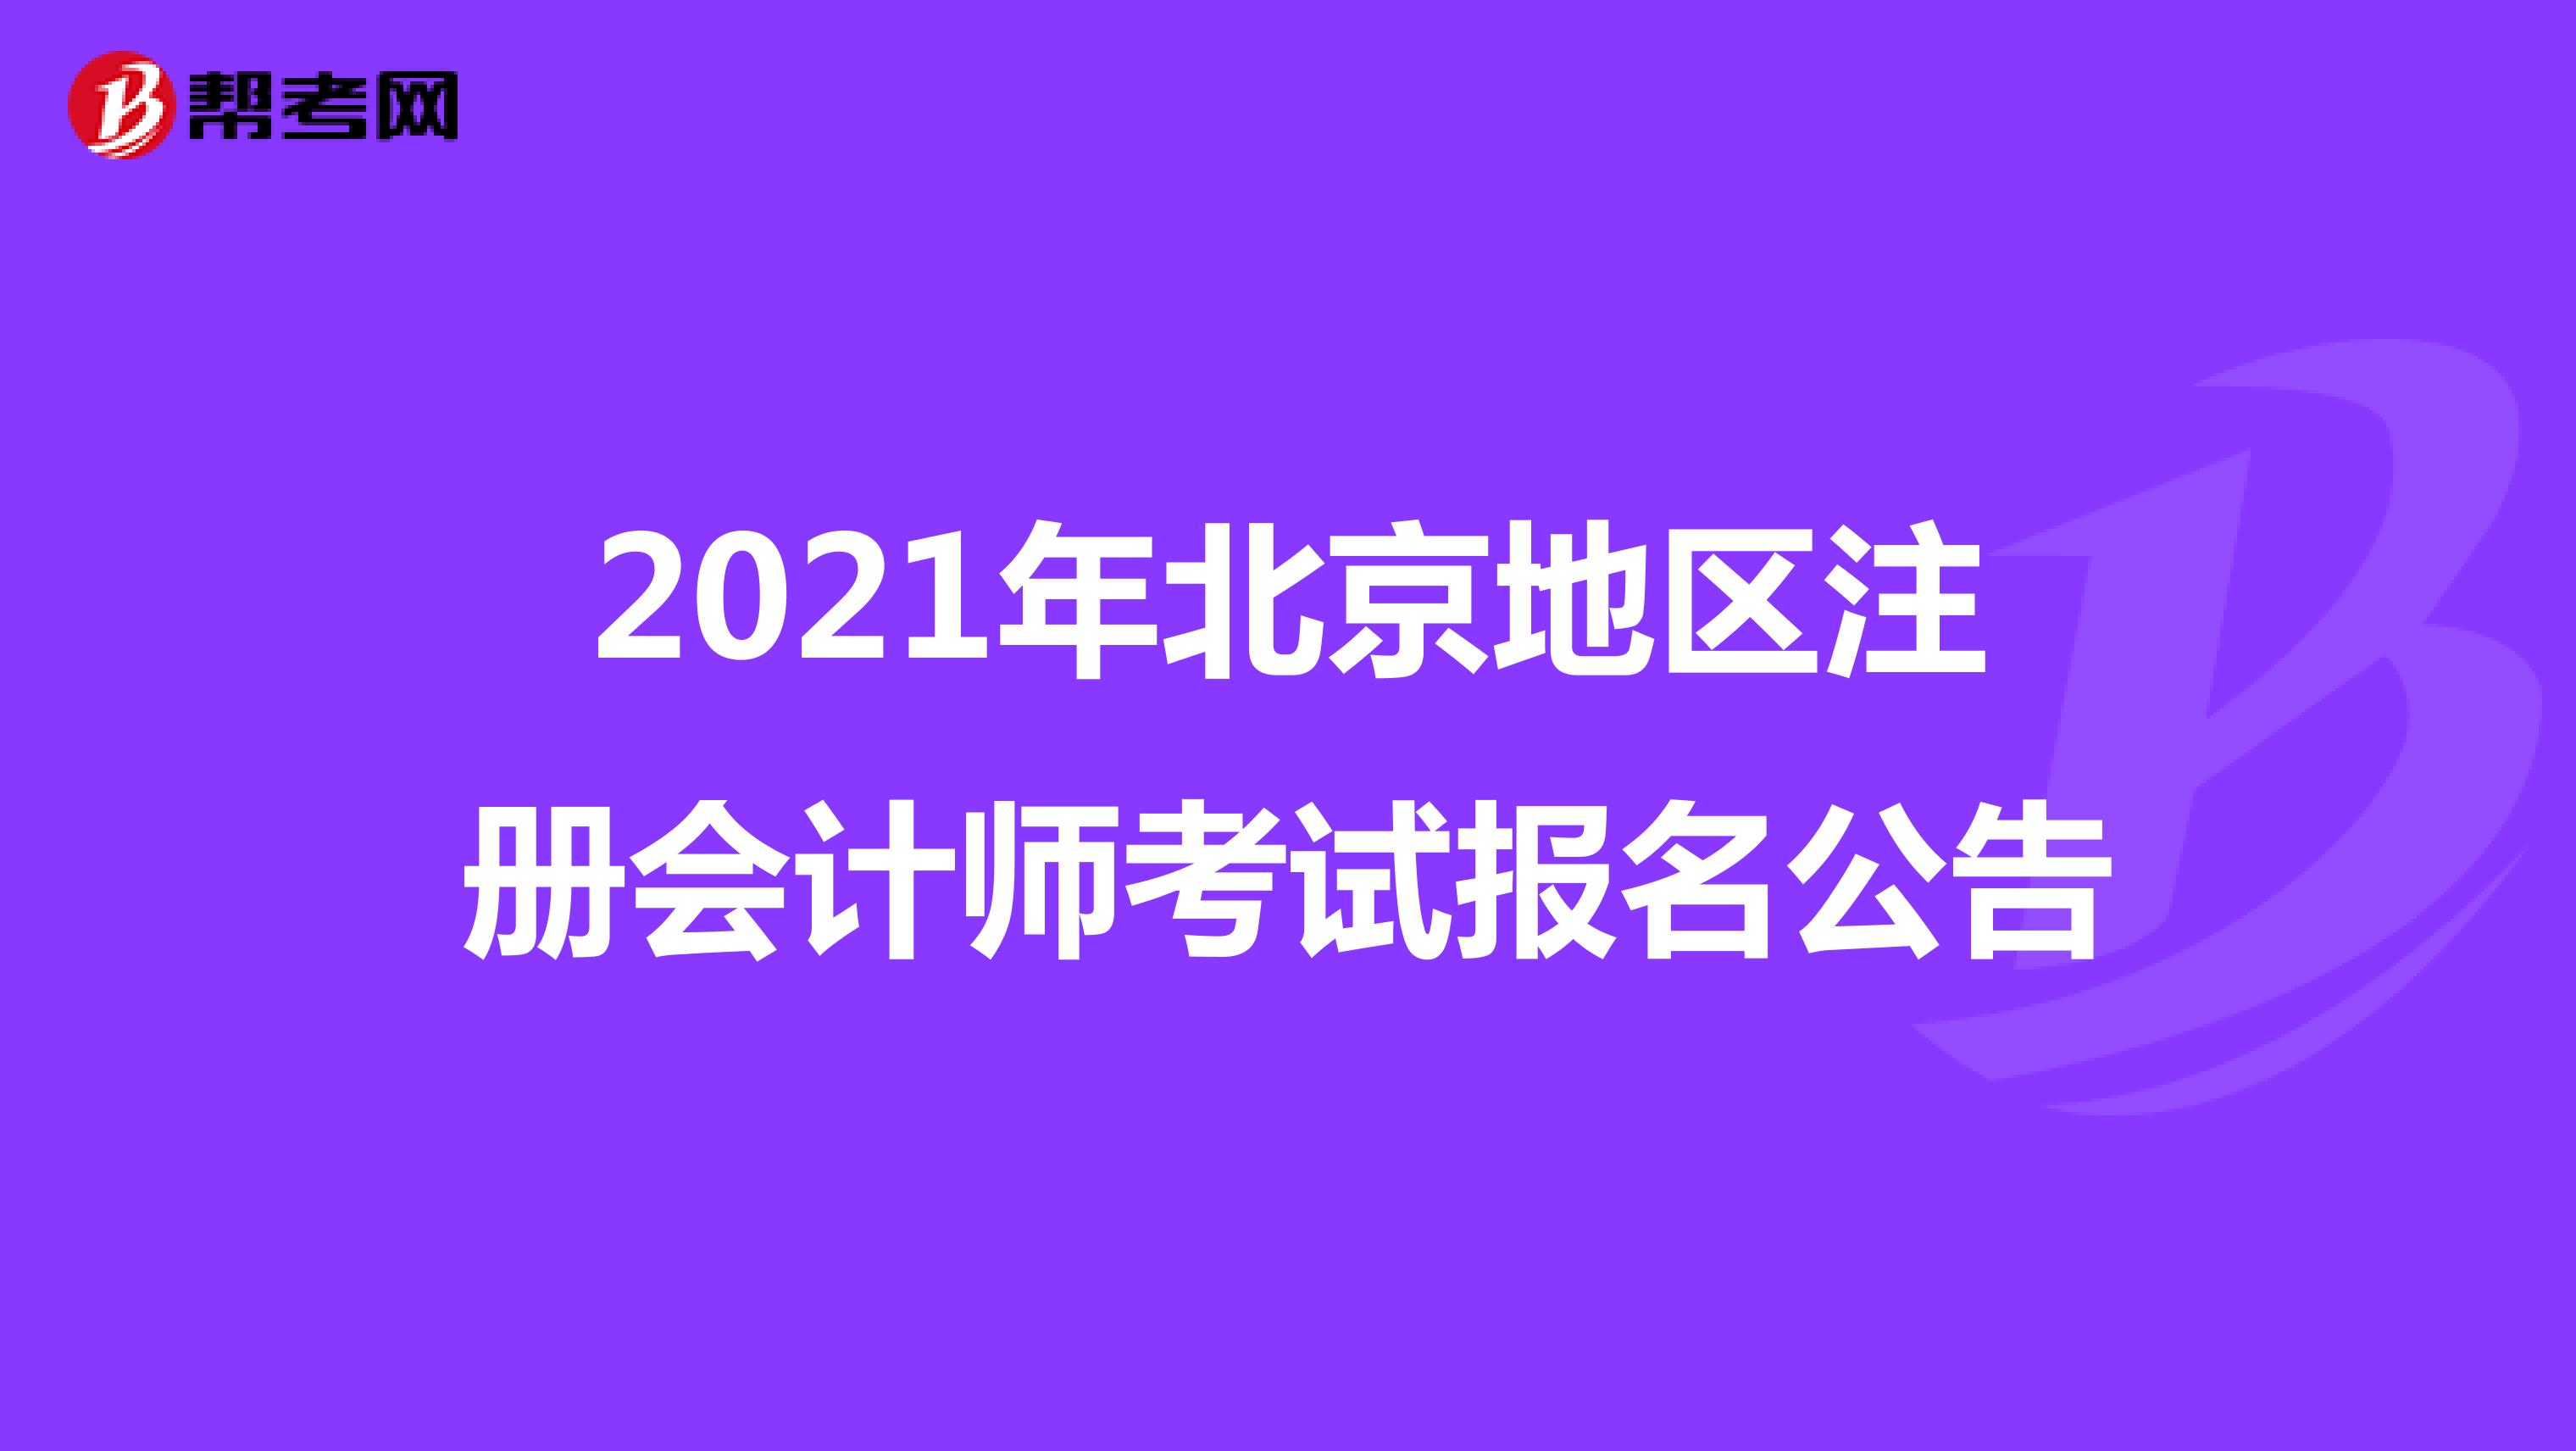 2021年北京地区注册会计师考试报名公告